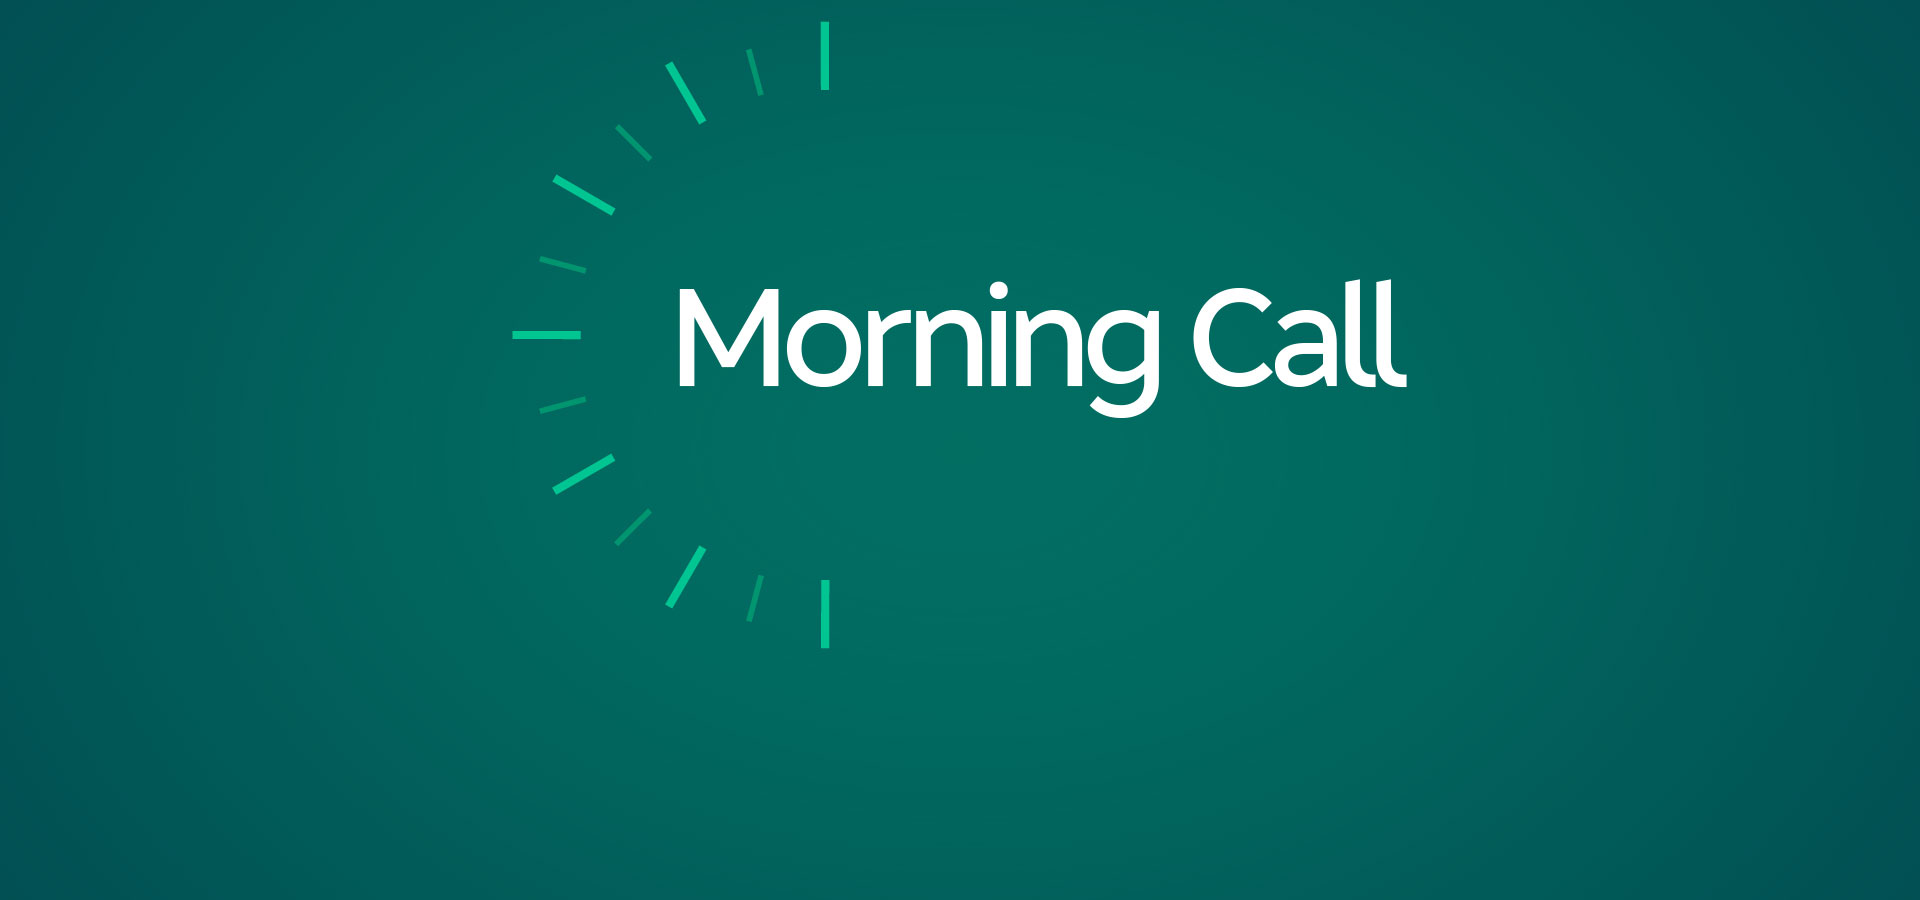 Morning Call – Day Trade e Swing Trade ao Vivo – Análise Gráfica - Índice, Dólar, Ações – 28/03